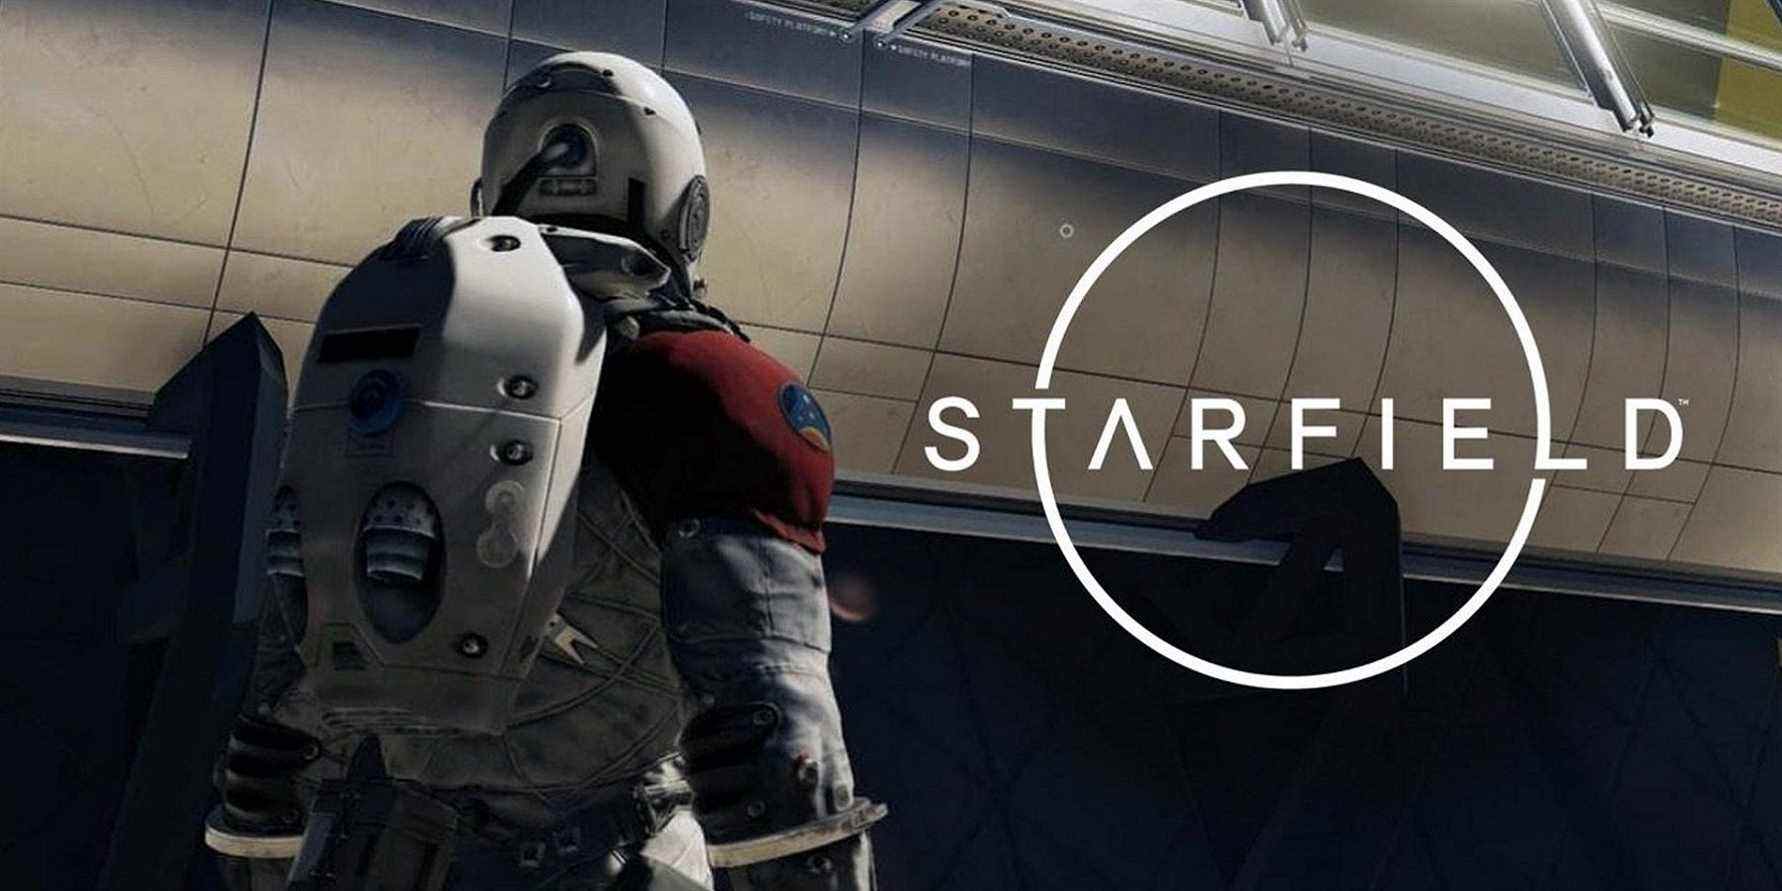 Image de Starfield montrant un astronaute dos à la caméra.